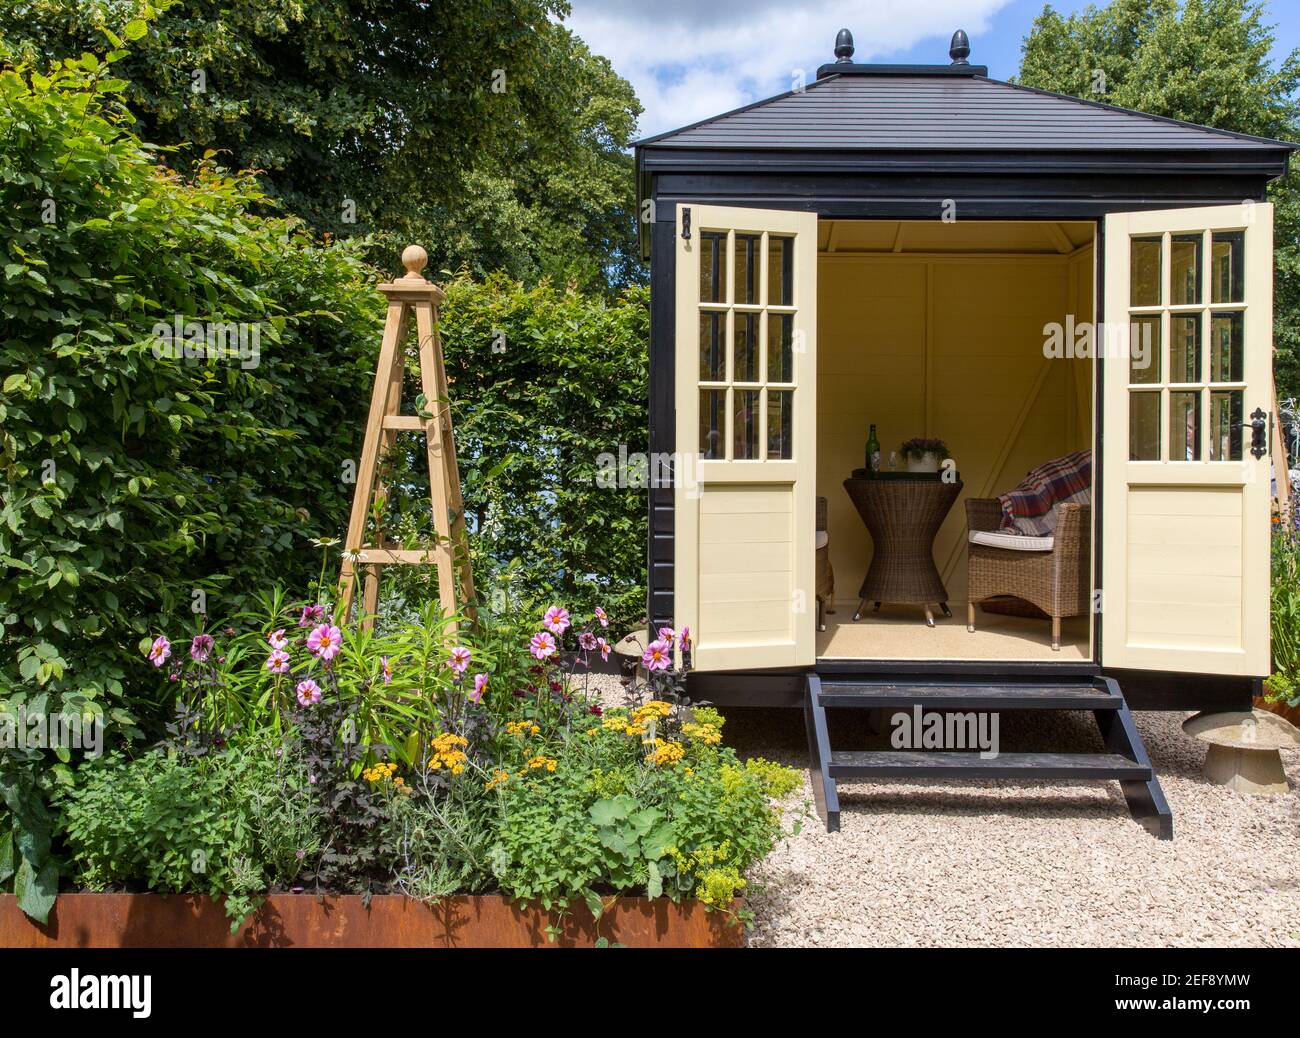 Un petit jardin de cottage anglais avec Summerhouse Shepherds Hut dedans jardin de gravier - travail à la maison bureau - lit surélevé Frontière florale - Londres Royaume-Uni Banque D'Images